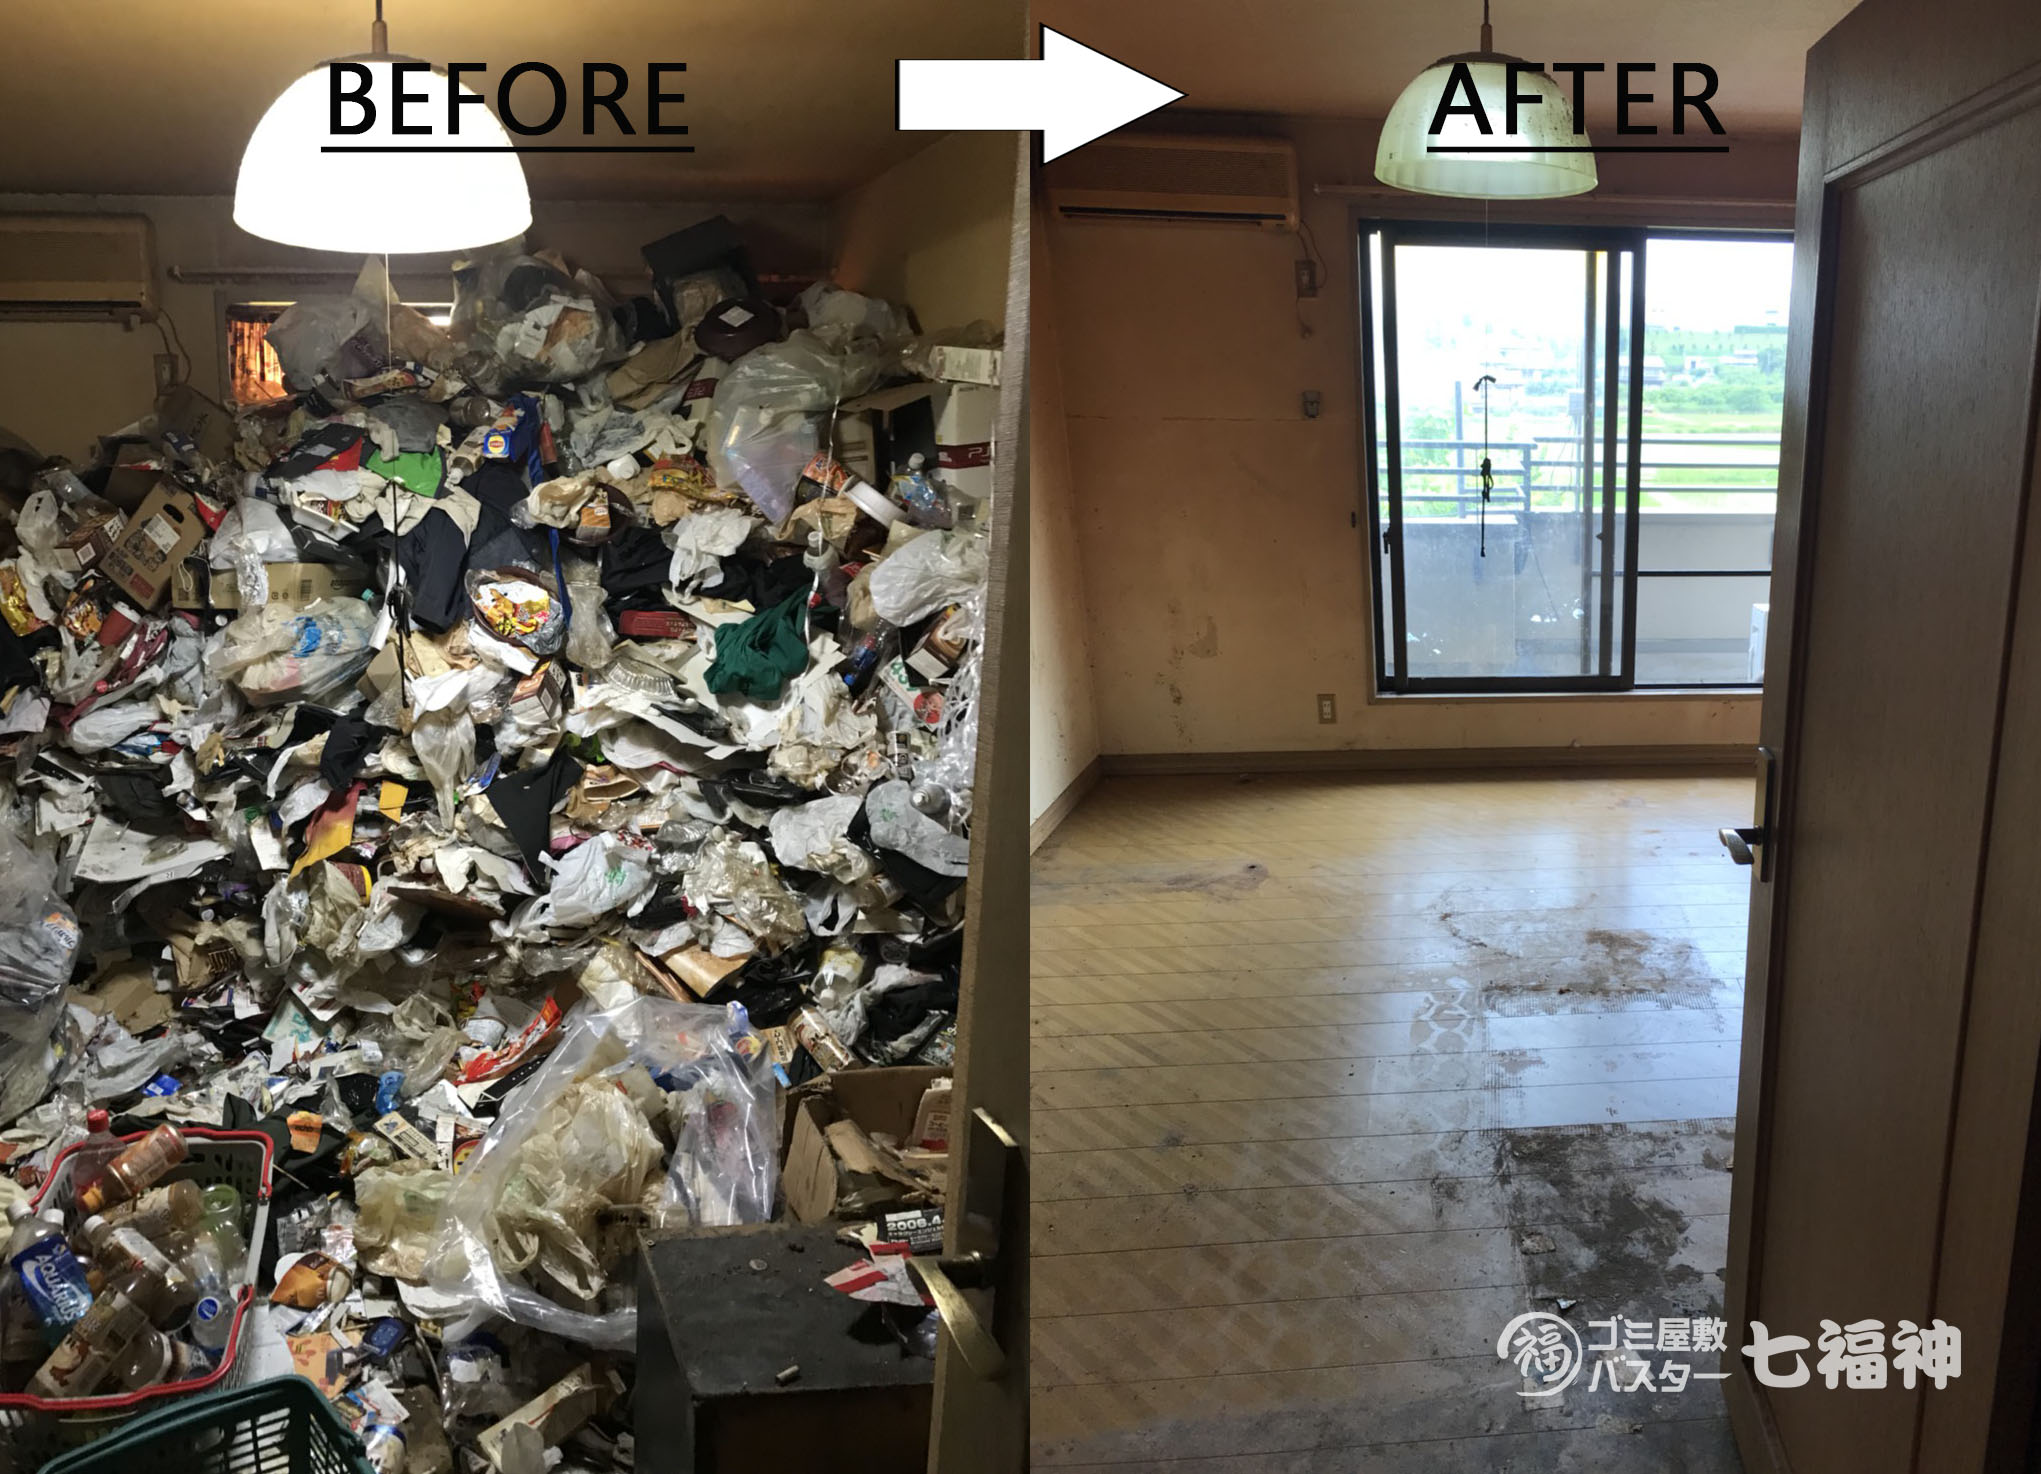 ゴミ屋敷清掃のプロが年末の大掃除をお手伝いします ゴミ屋敷バスター七福神